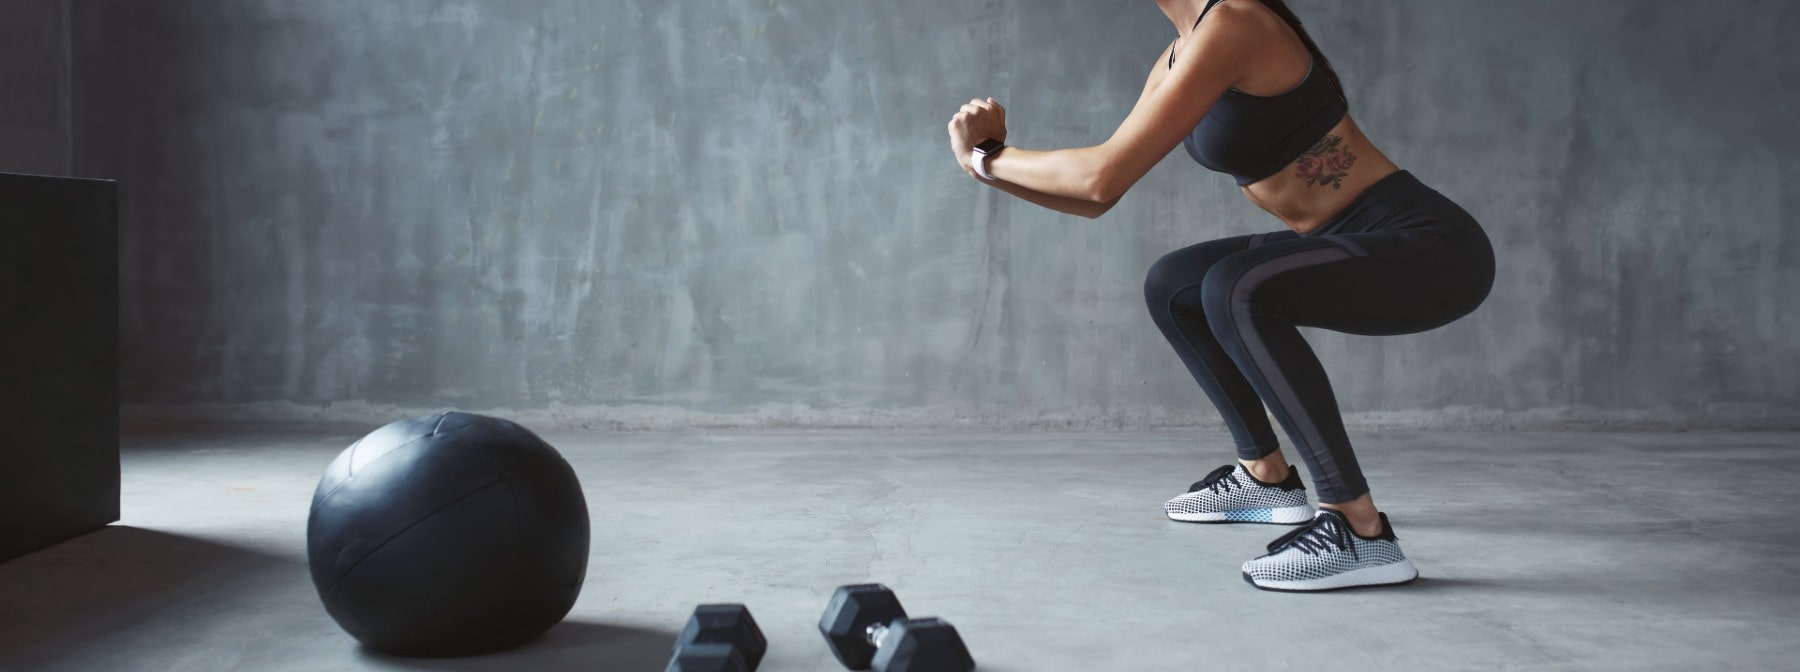 Leg-Destroying Dumbbell Workout | Top 8 Dumbbell Exercises for Legs